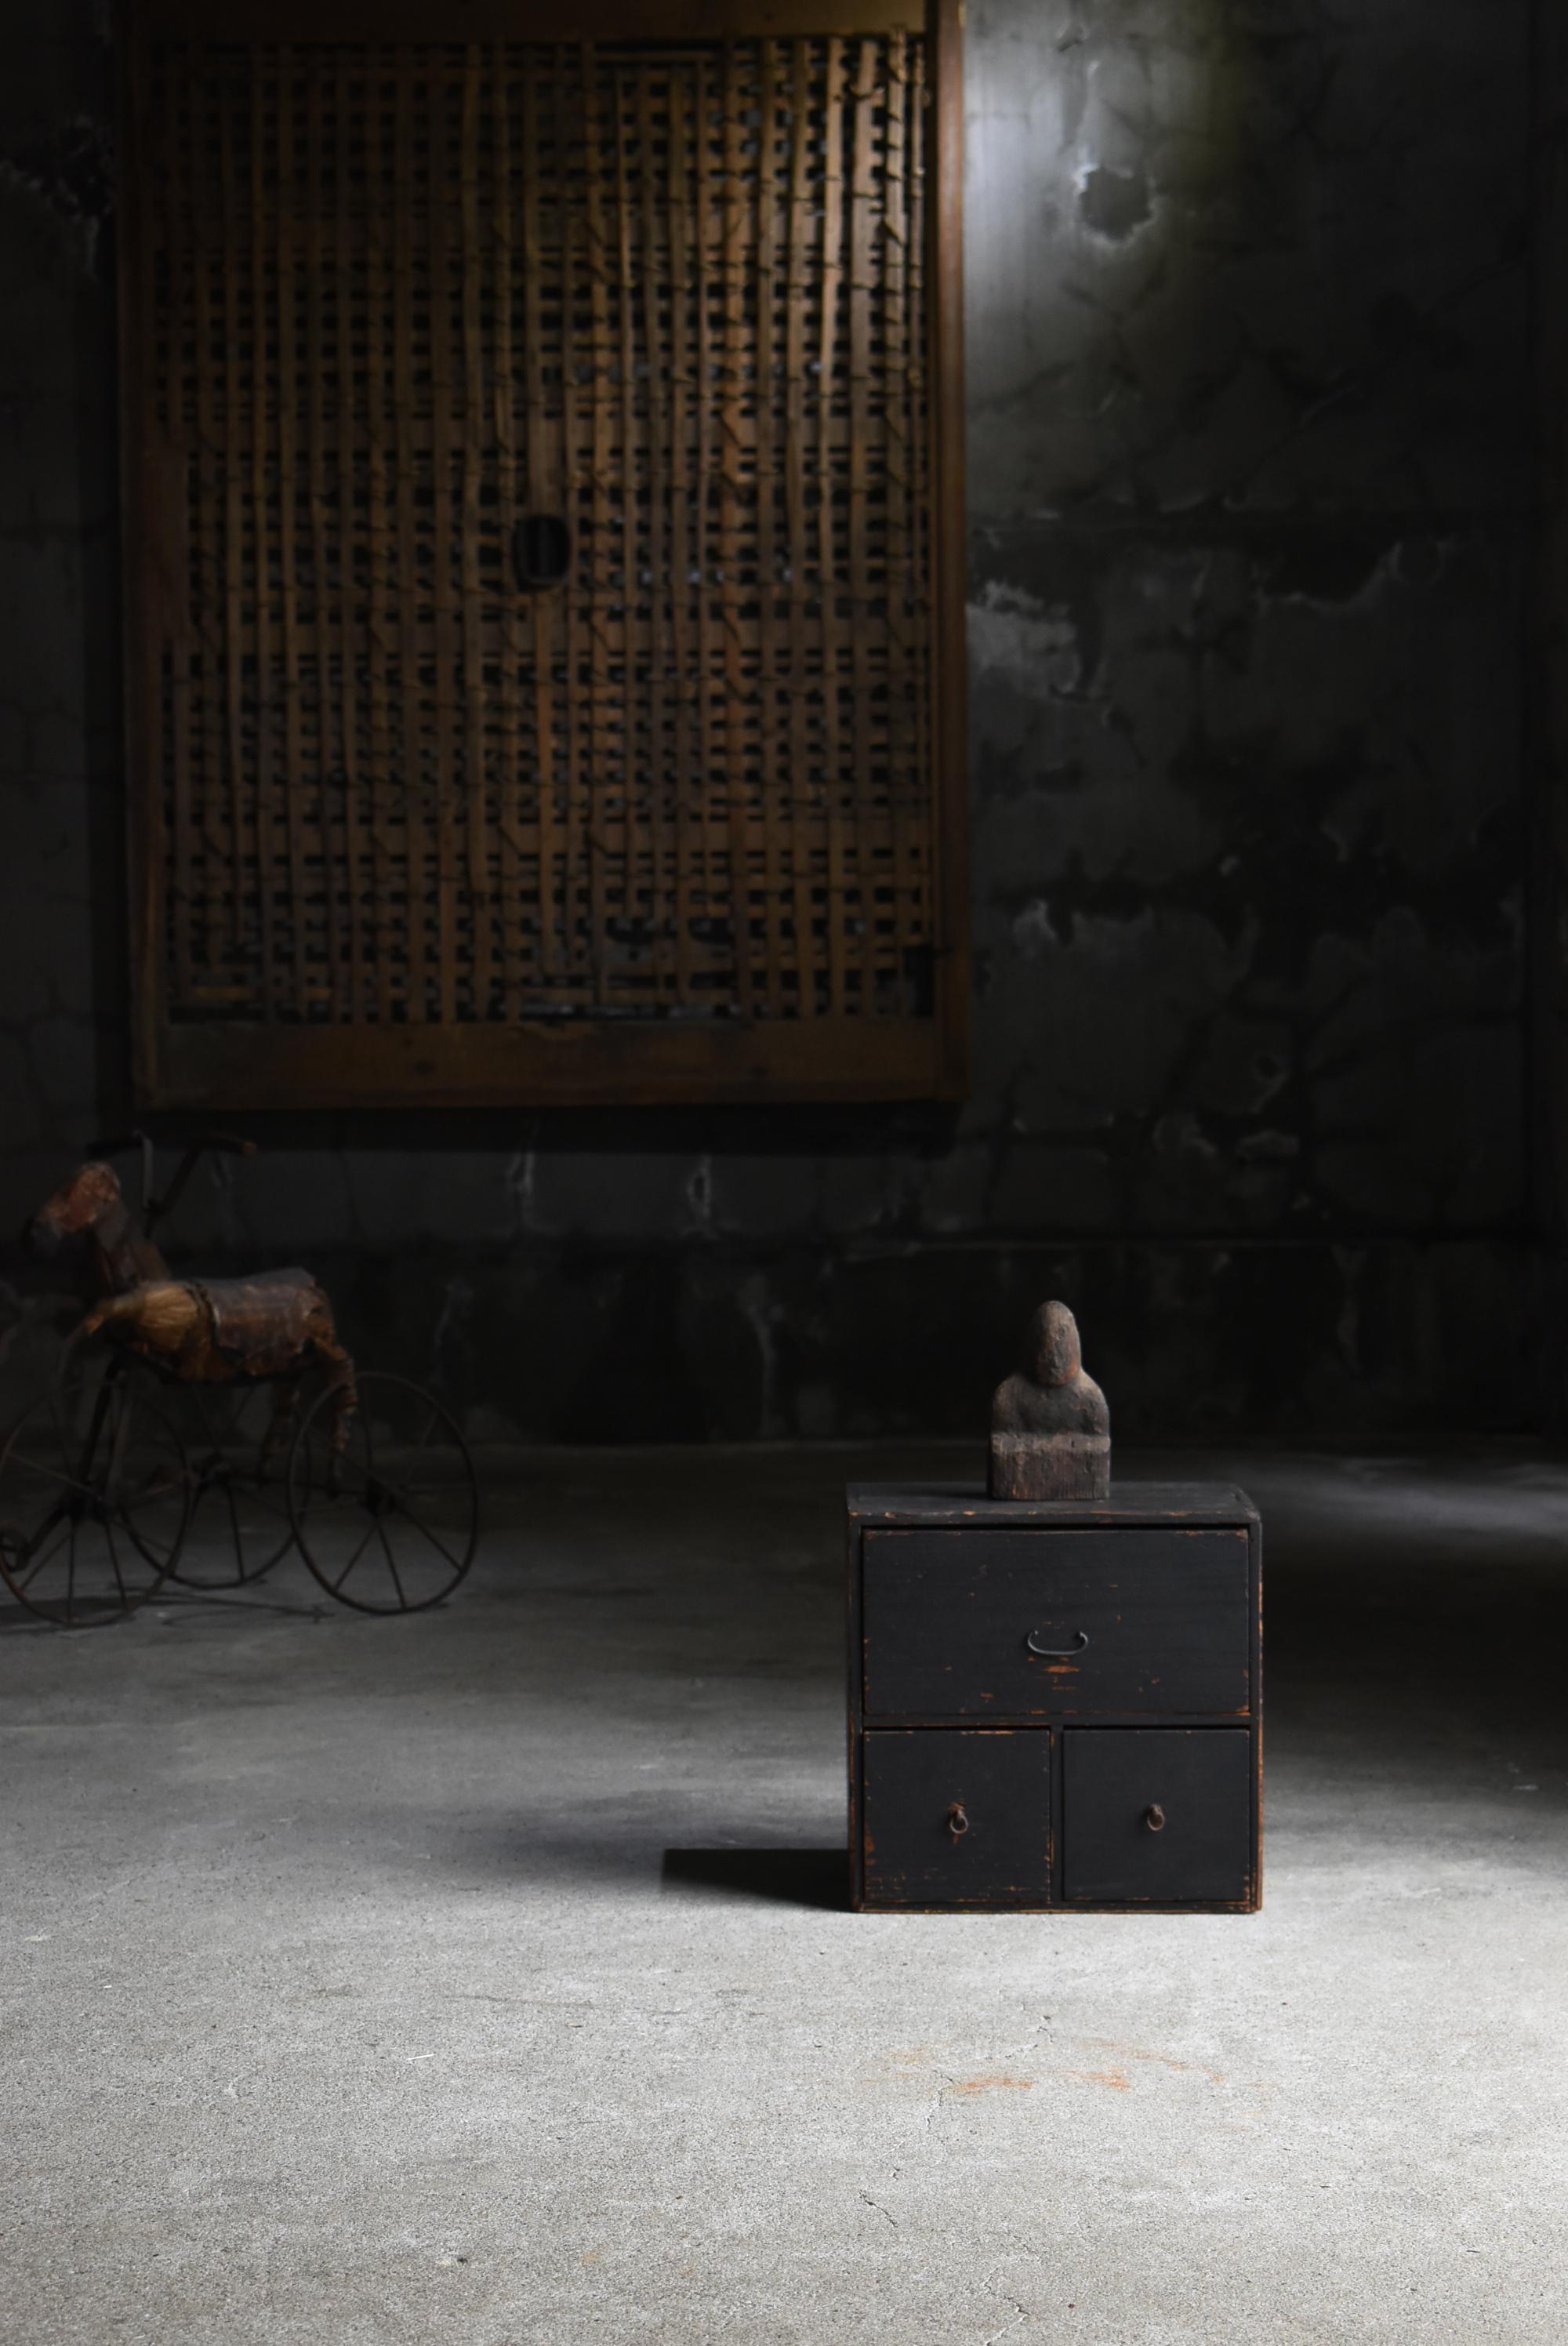 Très ancien petit tiroir japonais.
Ces meubles datent de la période Meiji (1860-1900).
Il est fabriqué en bois de cèdre.

Le tiroir est de bon goût, rustique, simple et beau.
Il n'y a pas de gaspillage dans la conception.
C'est le summum de la